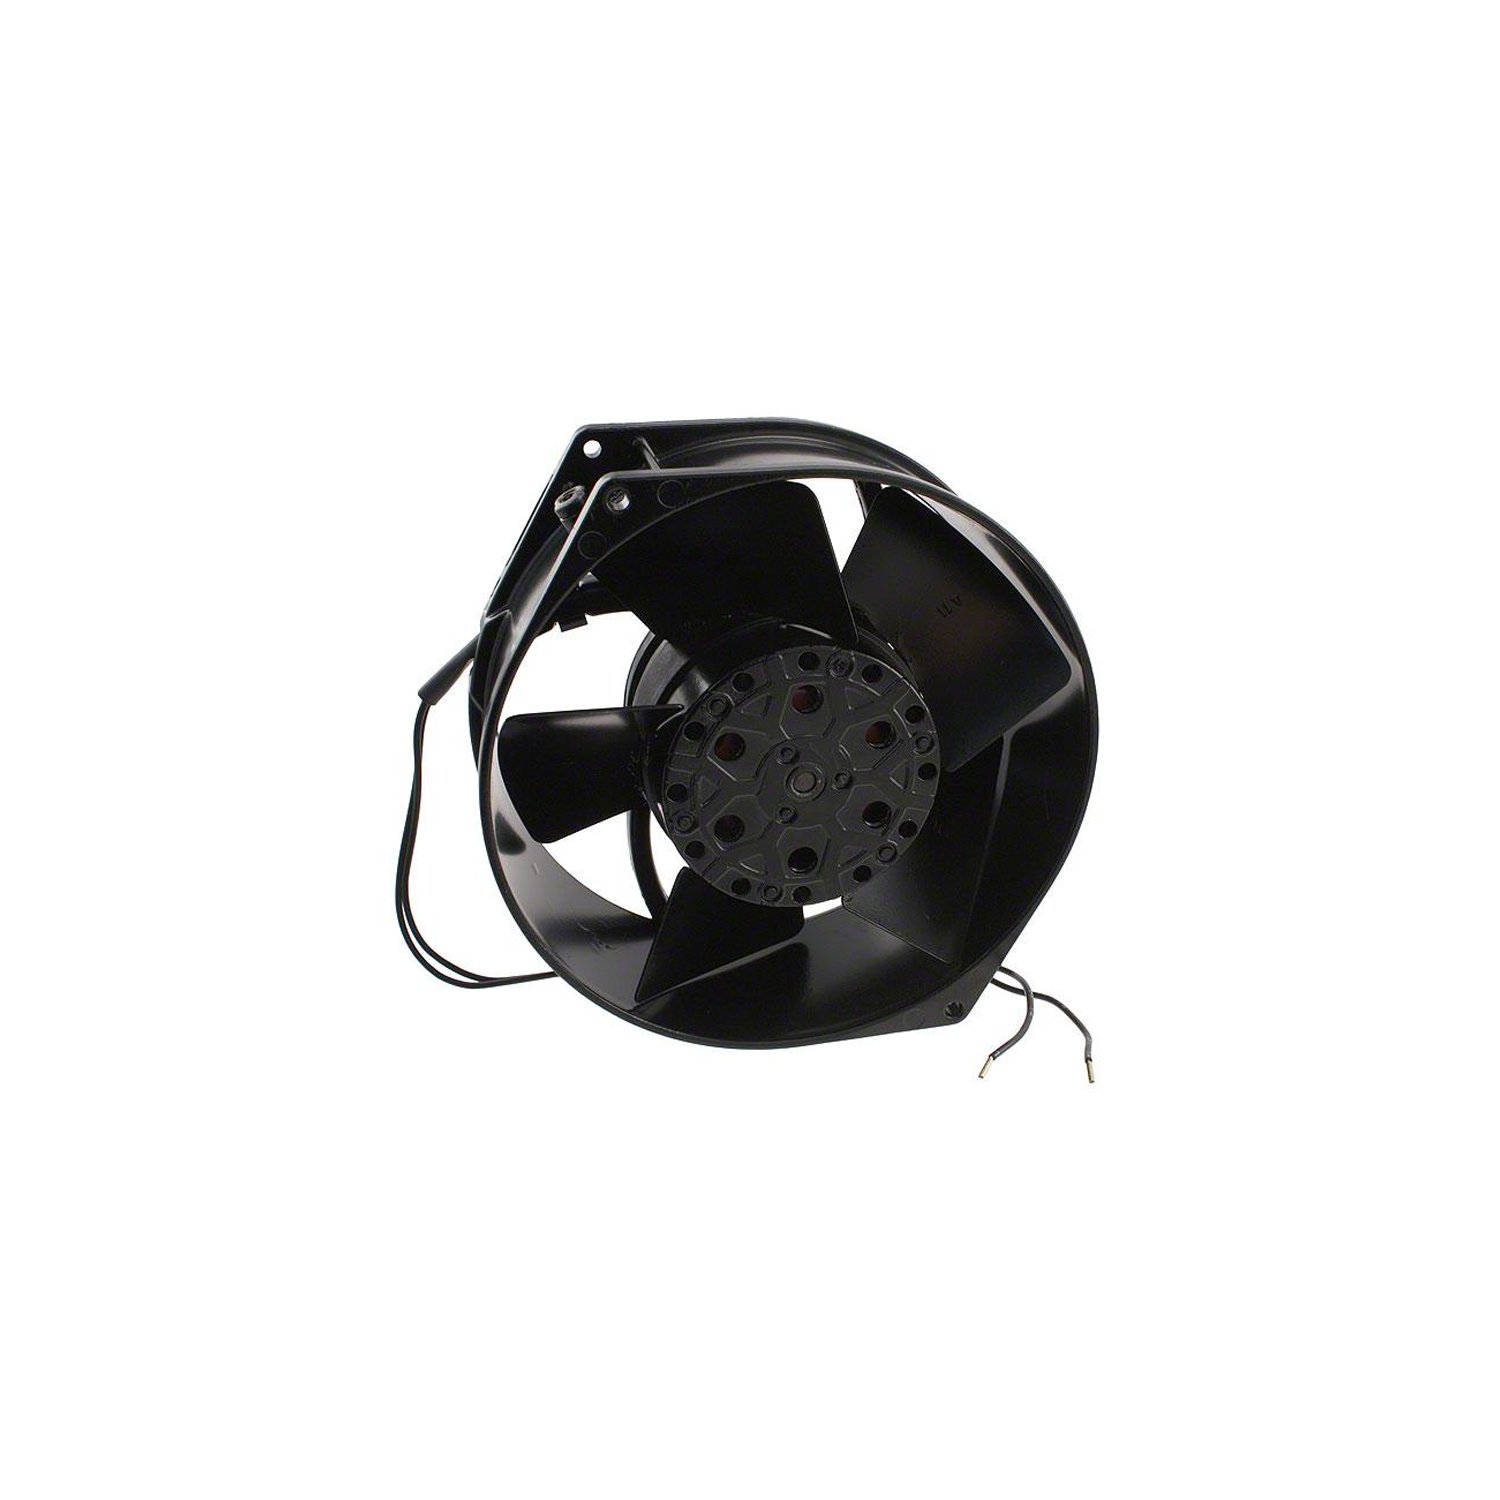 Axiale ventilator EBM W2S130-BM03-01, D = 150x55mm, 230V, voor leidingen